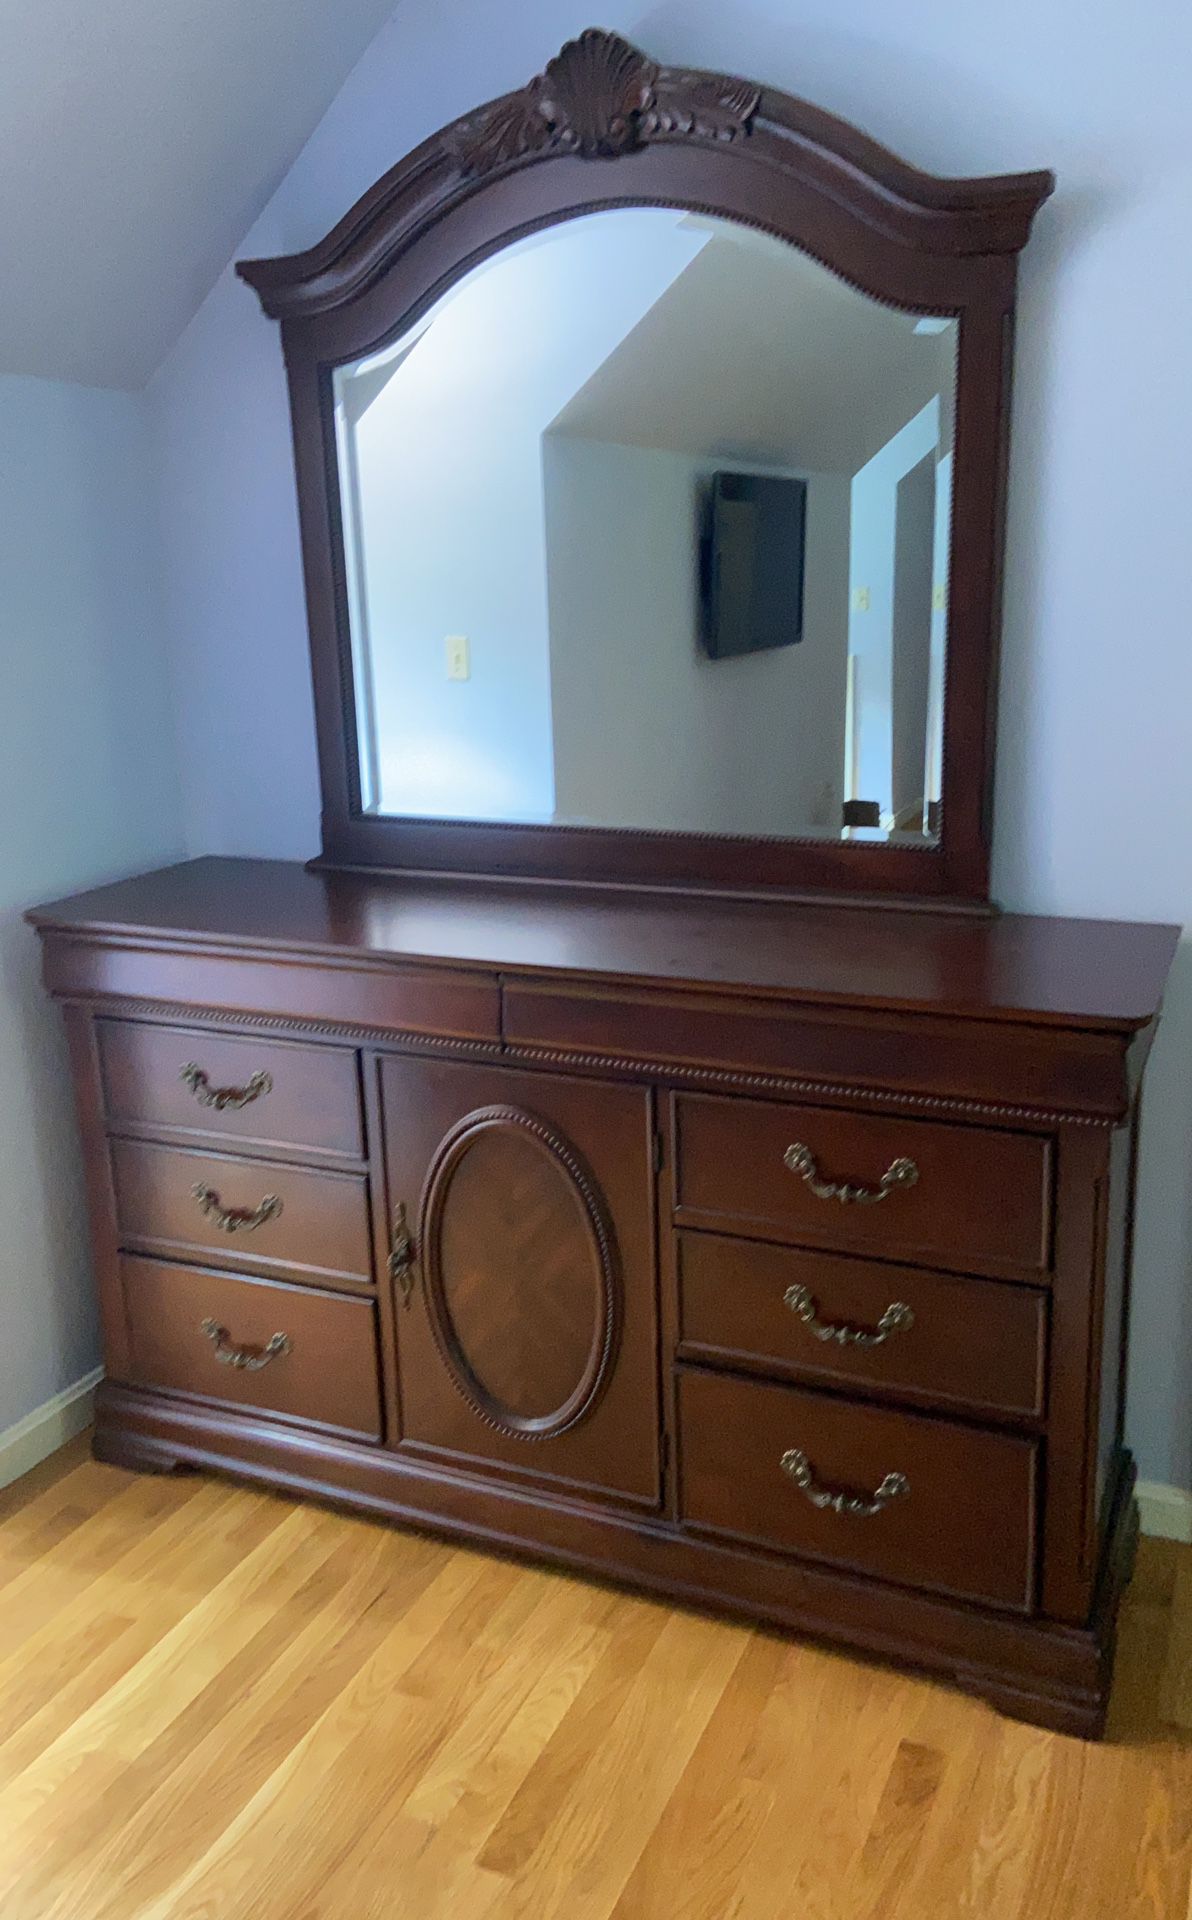 Dresser with mirror - $350